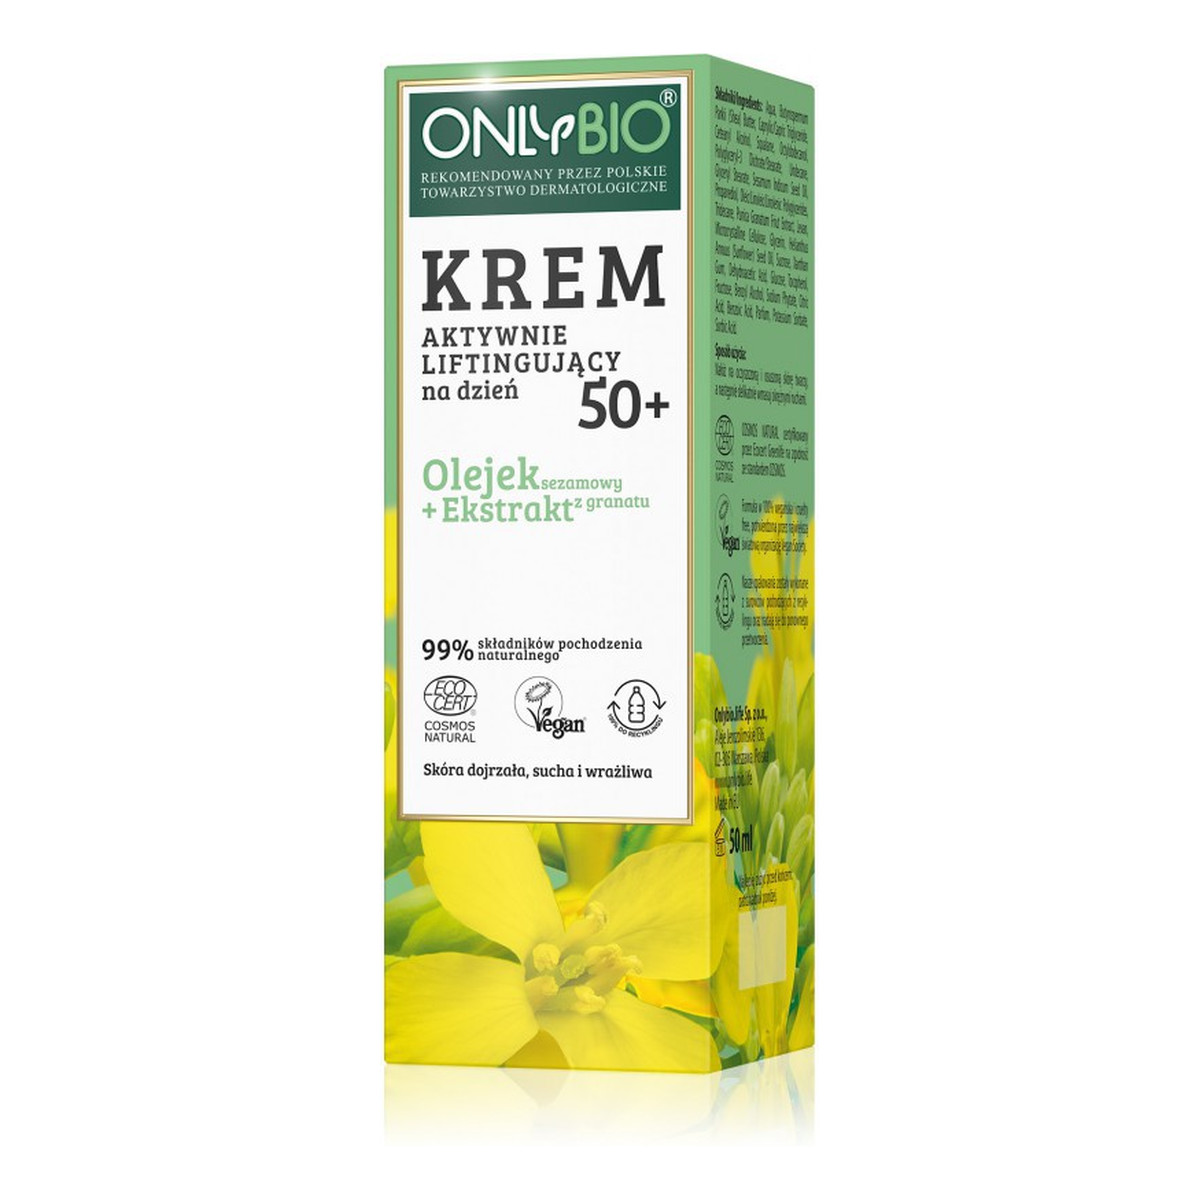 OnlyBio Krem aktywnie liftingujący na dzień 50+ olejek sezamowy i ekstrakt z granatu 50ml